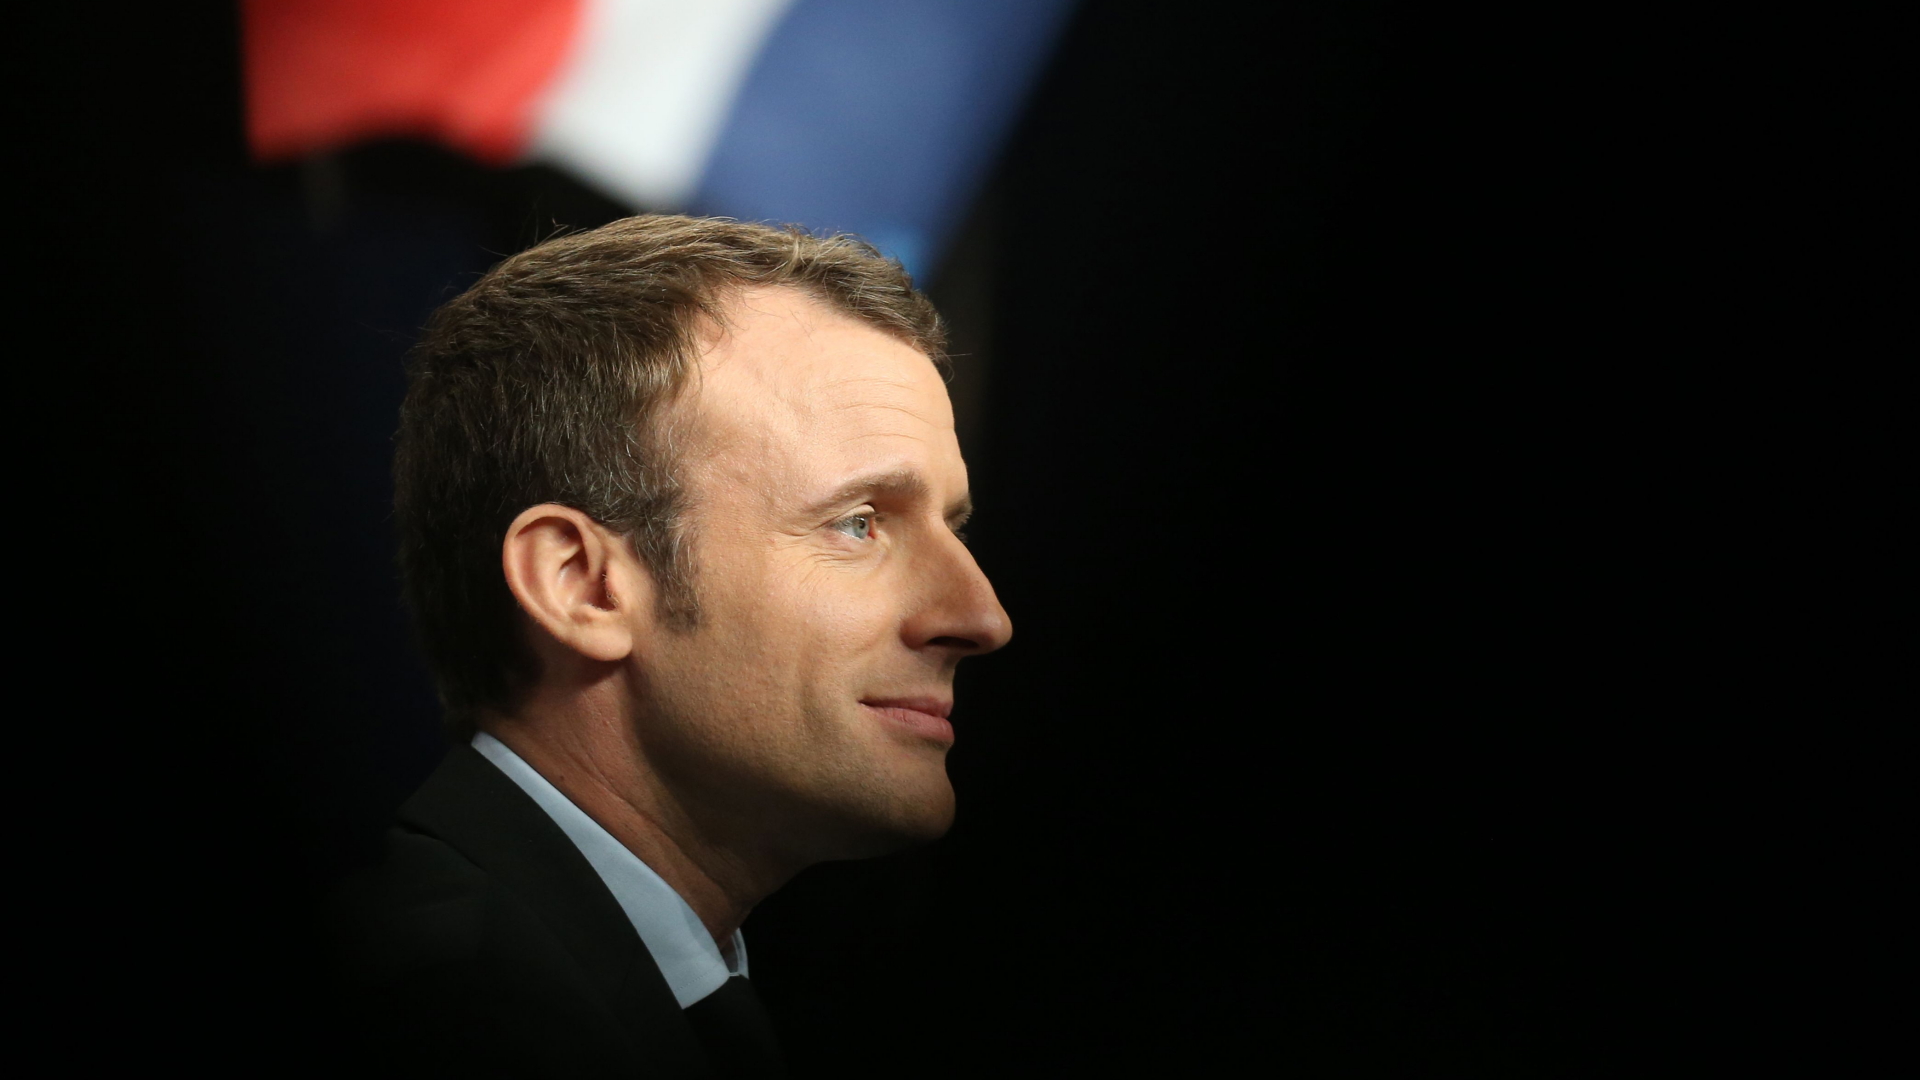 Warum Macron punktet - eine Analyse